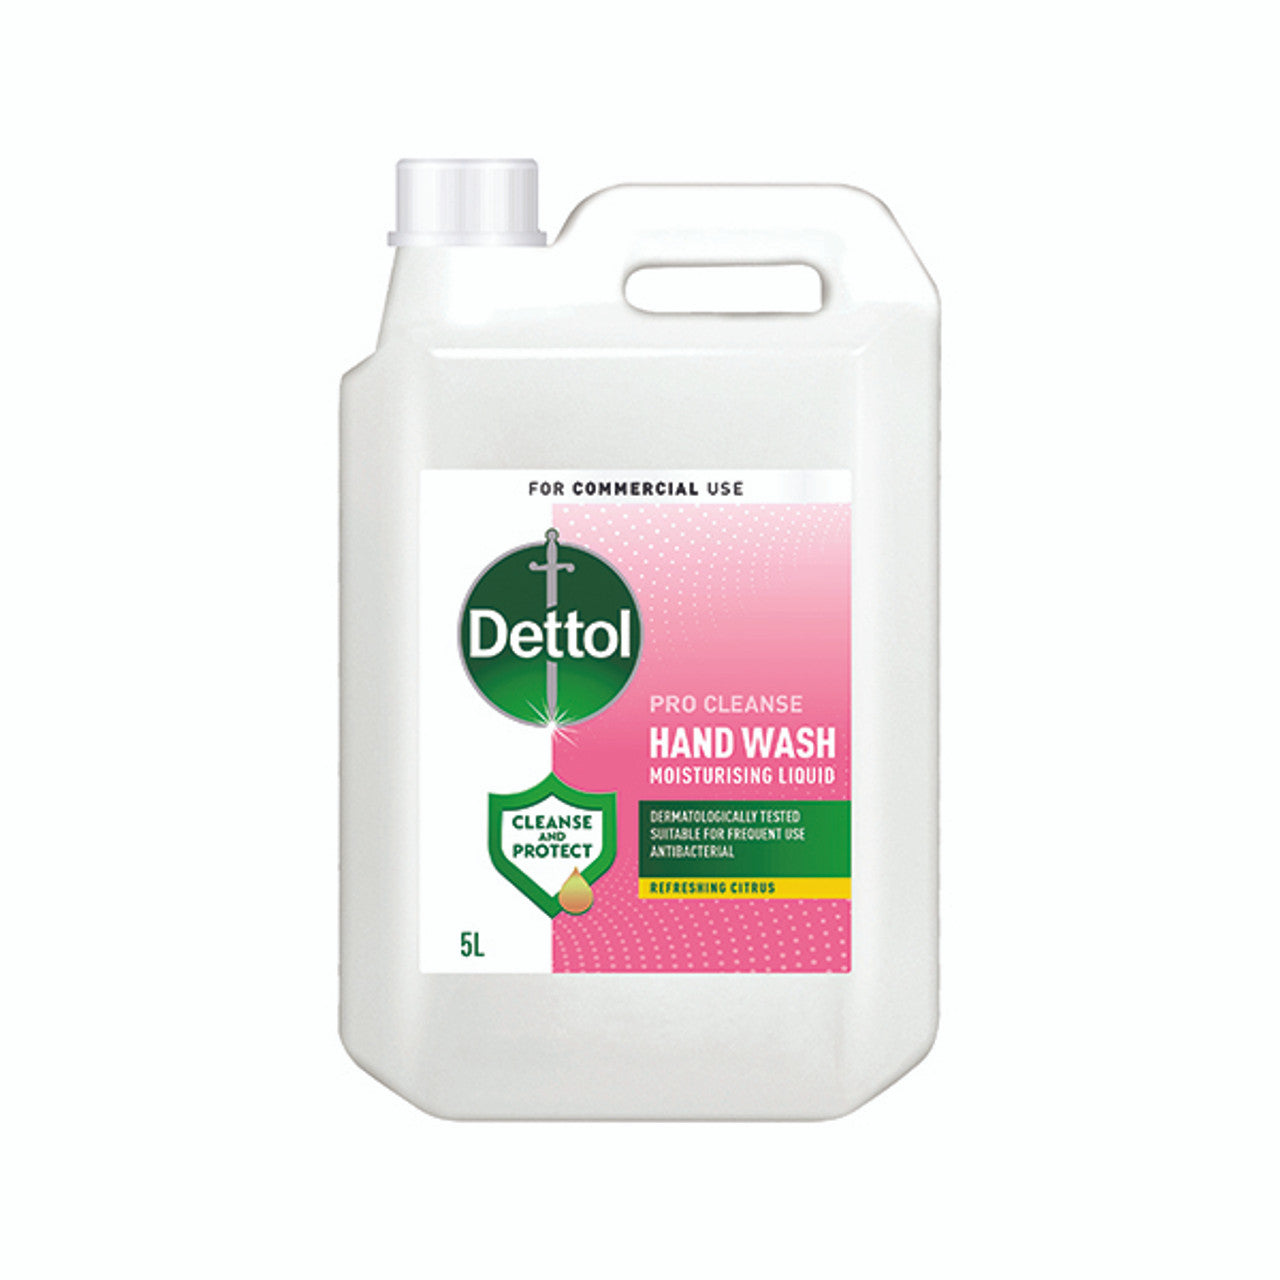 Dettol Professional Handwash - 5 Litre - Citrus Scent